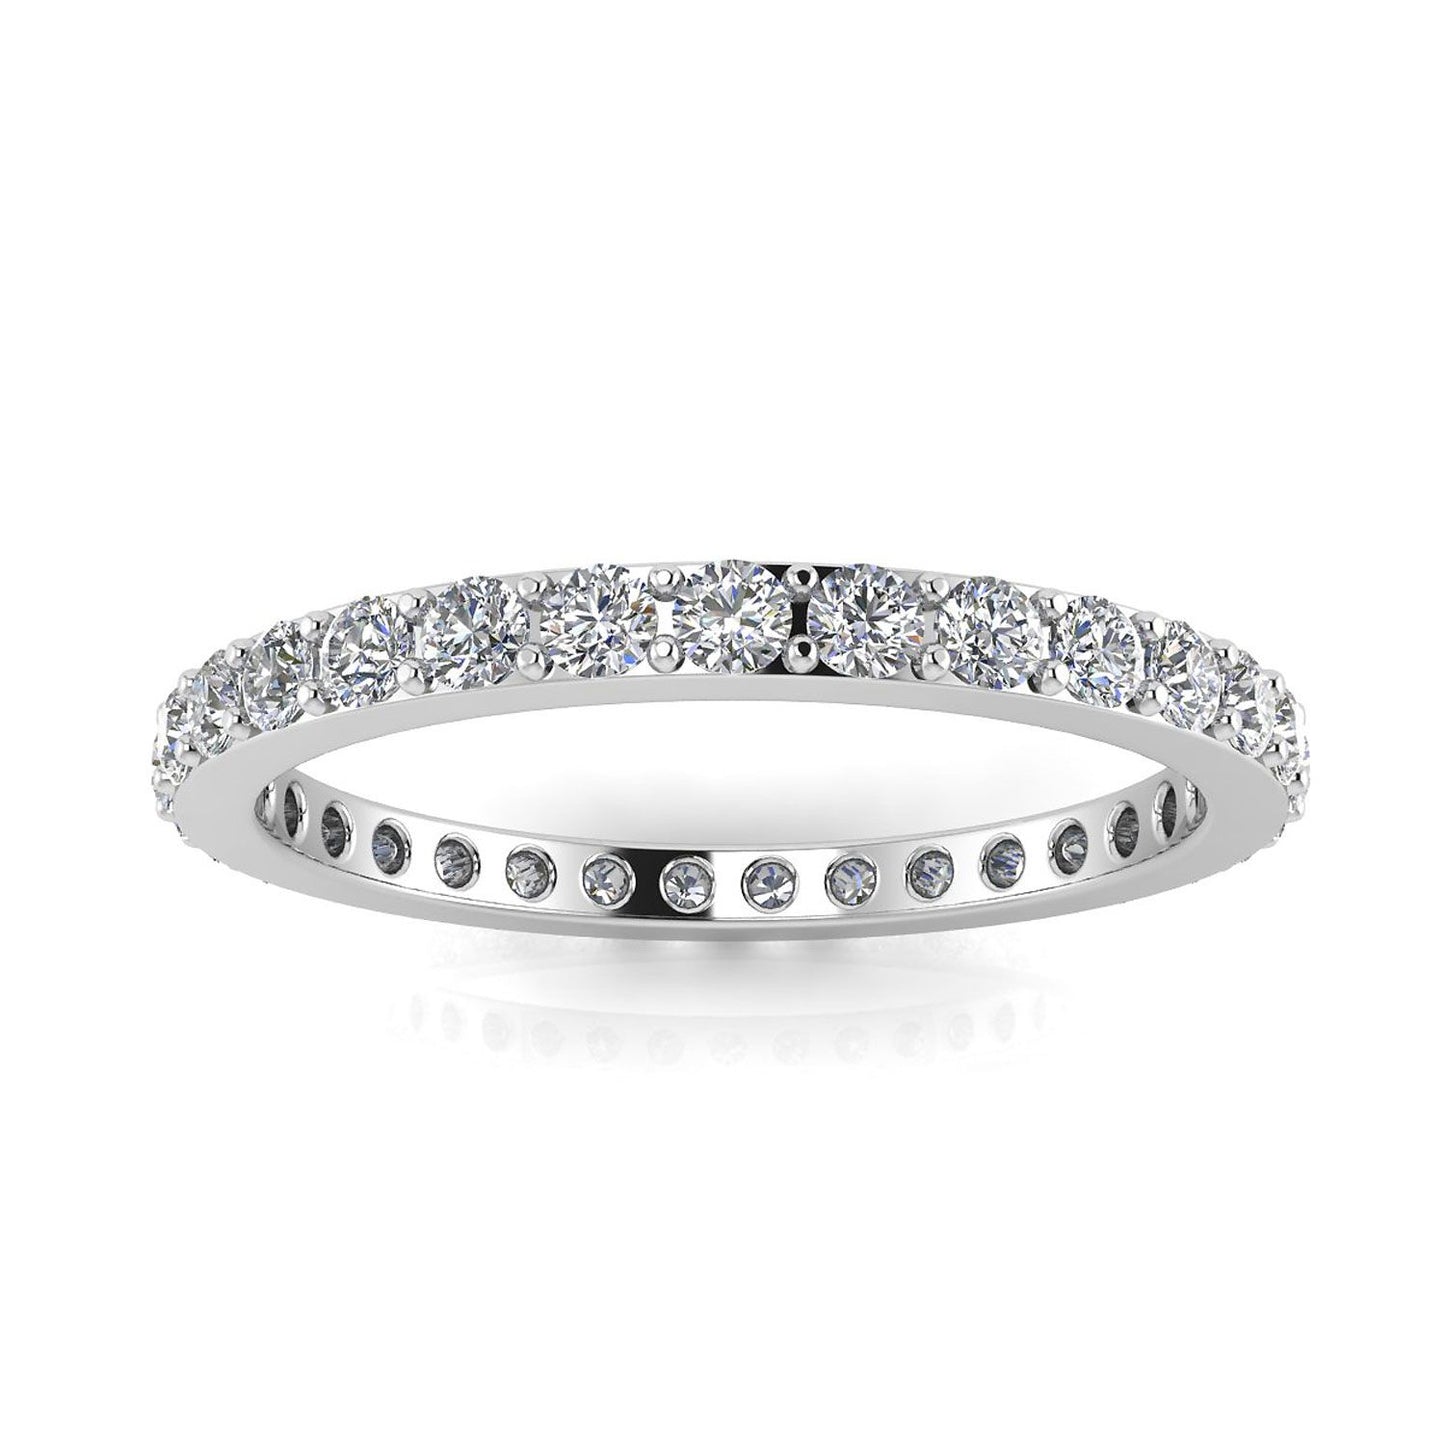 แหวนหมั้นเพชรเจียระไนทรงกลมทรงกลม Eternity Ring ทองคำขาว 18k (0.5 กะรัต) ขนาดแหวน 7.5